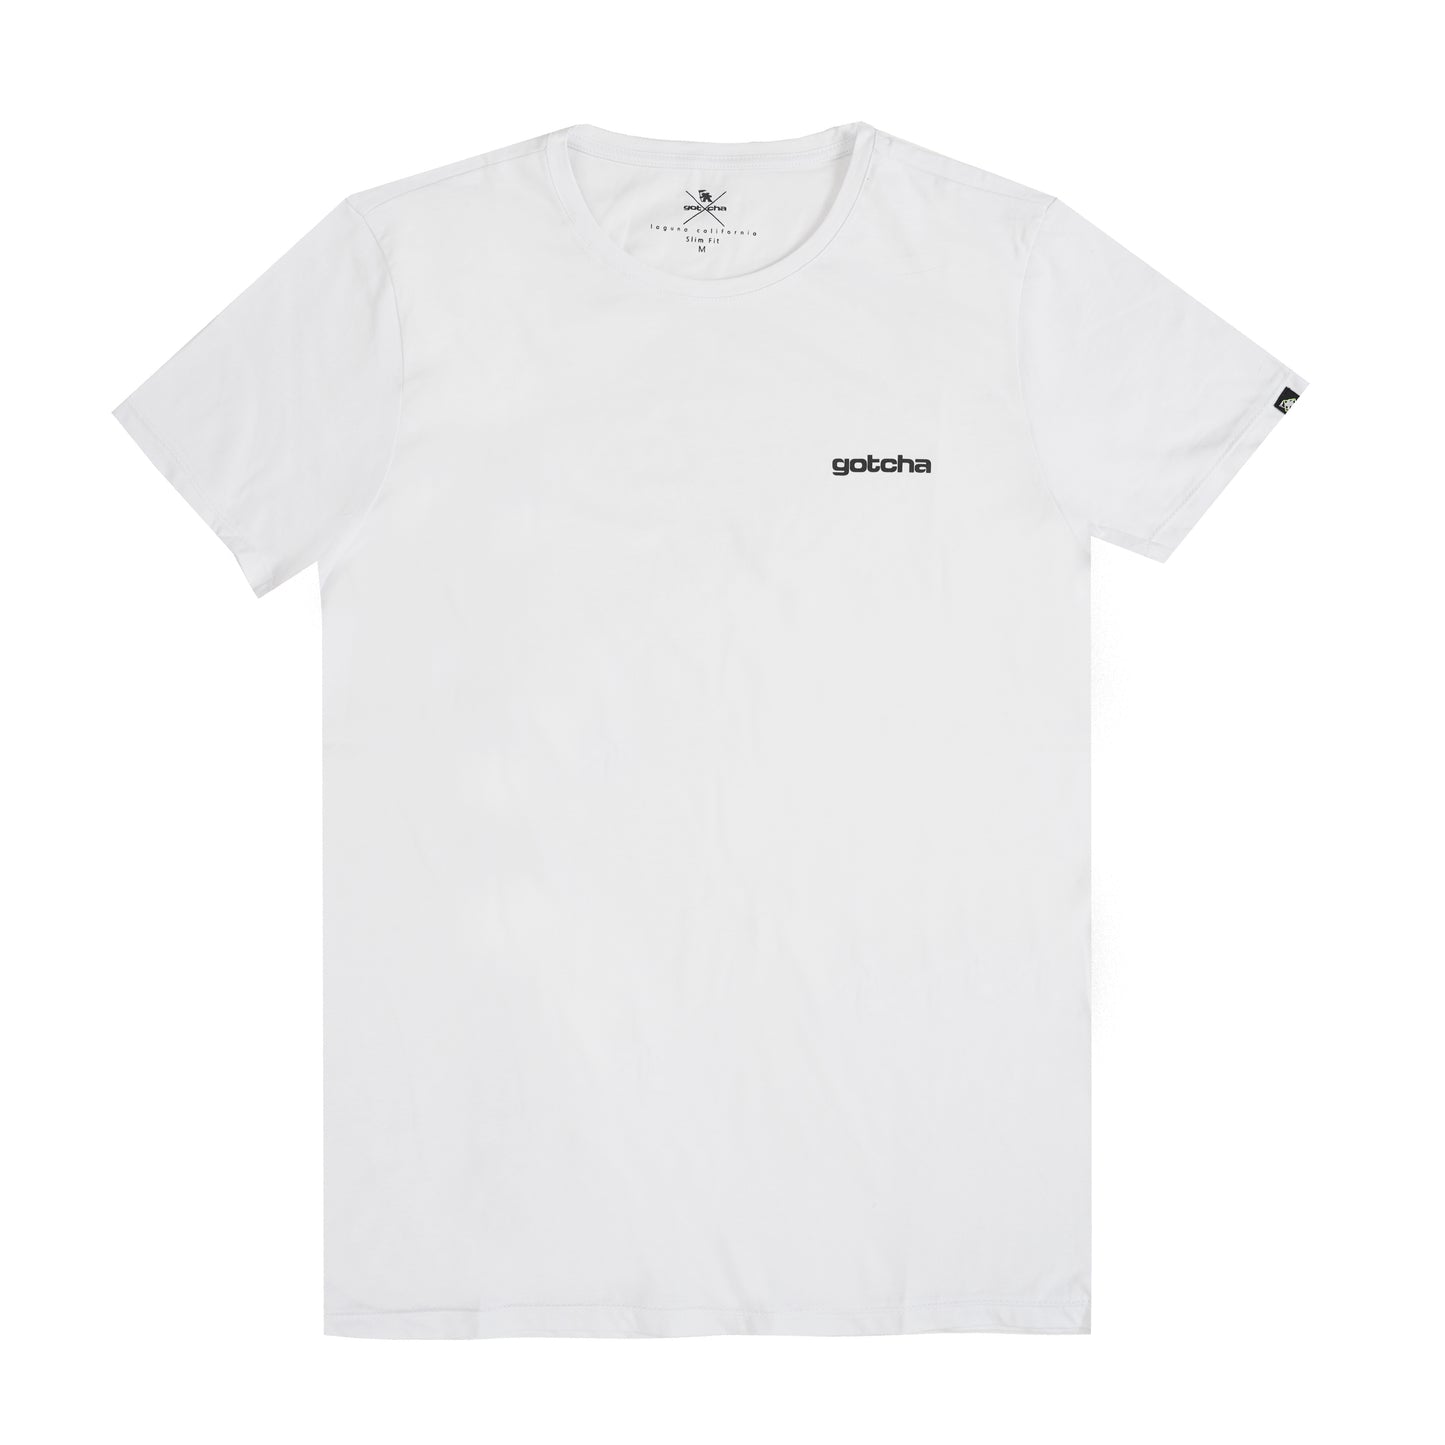 NathanSS22 T-shirt